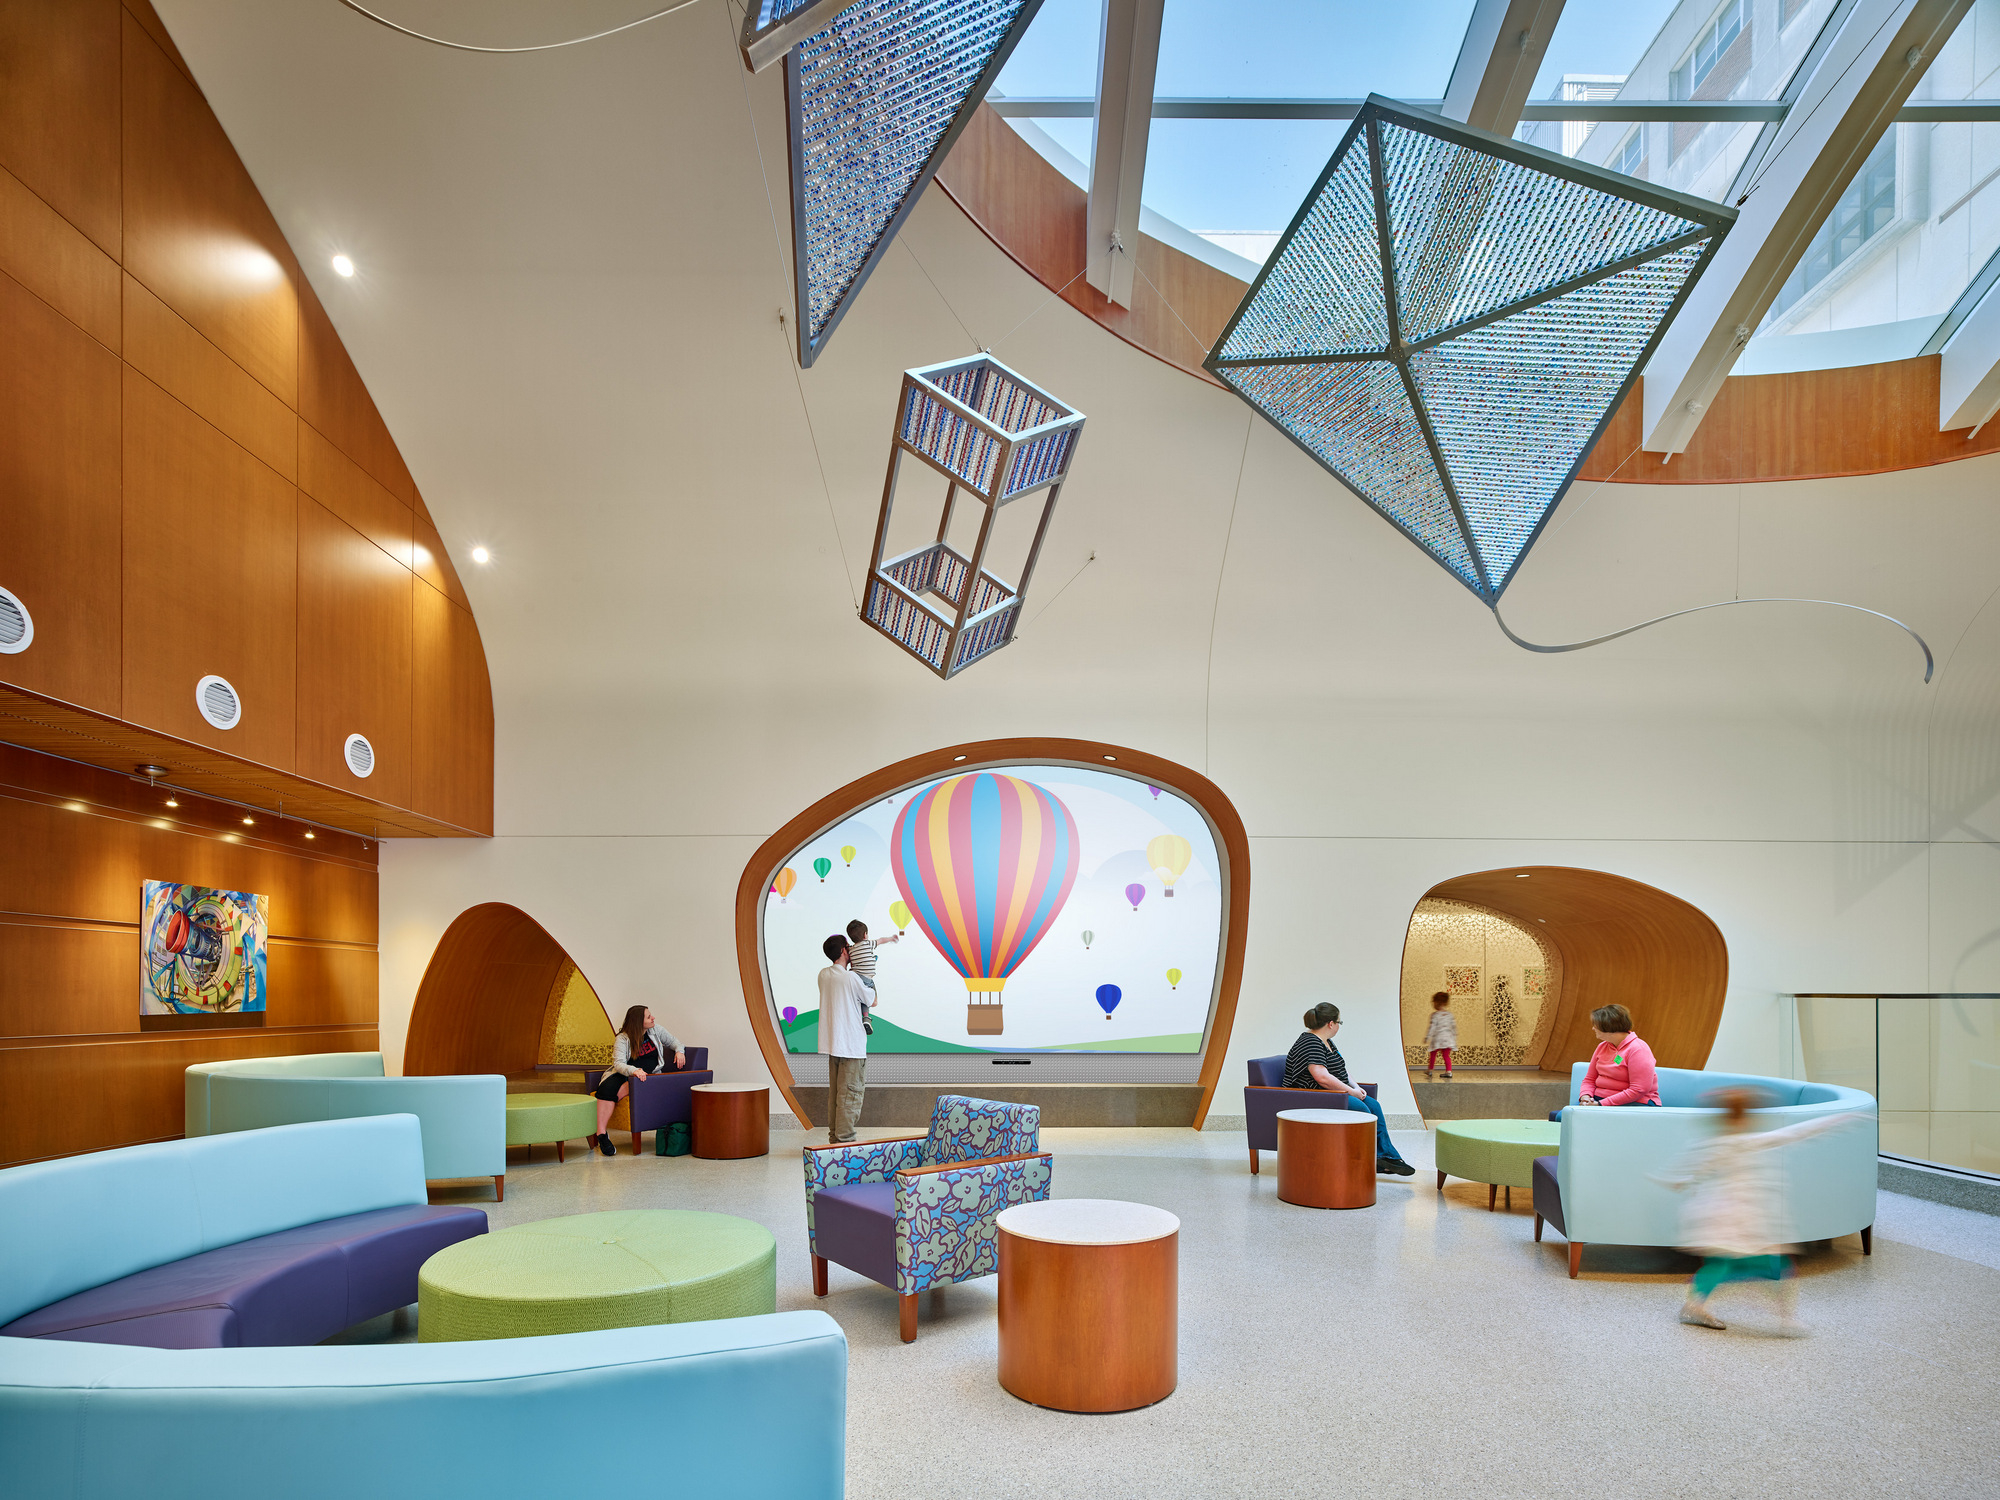 Lobby of the UK Children's Hospital